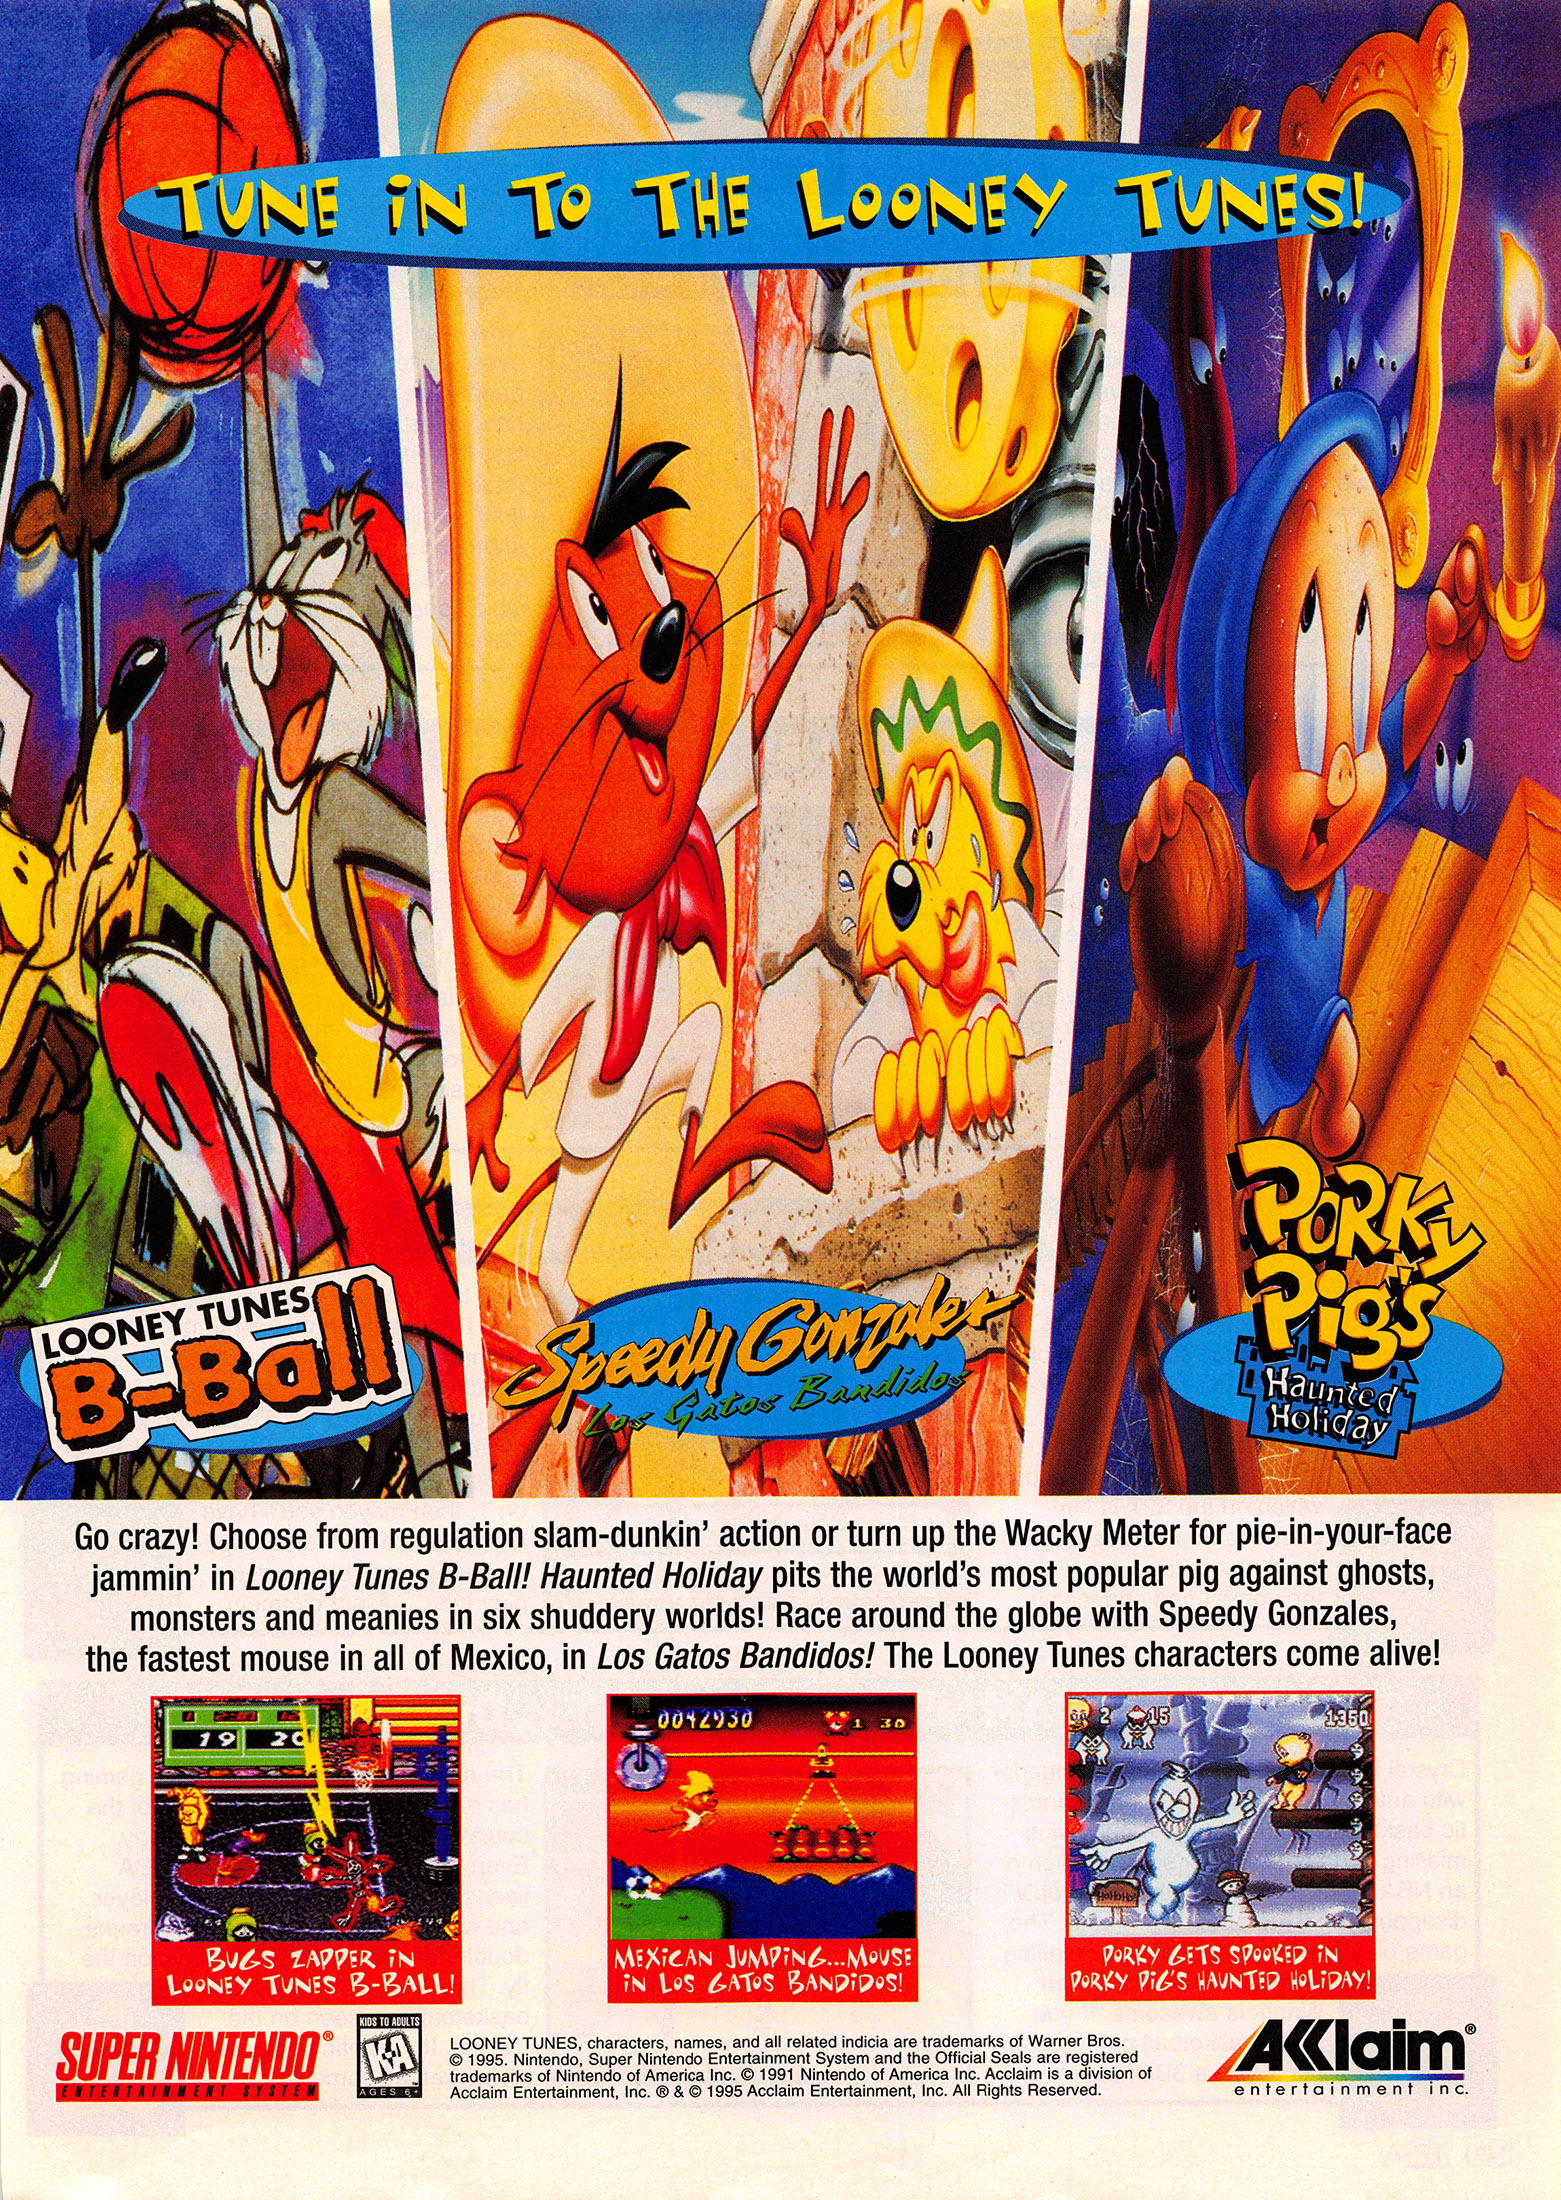 Speedy Gonzales - Los Gatos Bandidos - Super Famicom Games